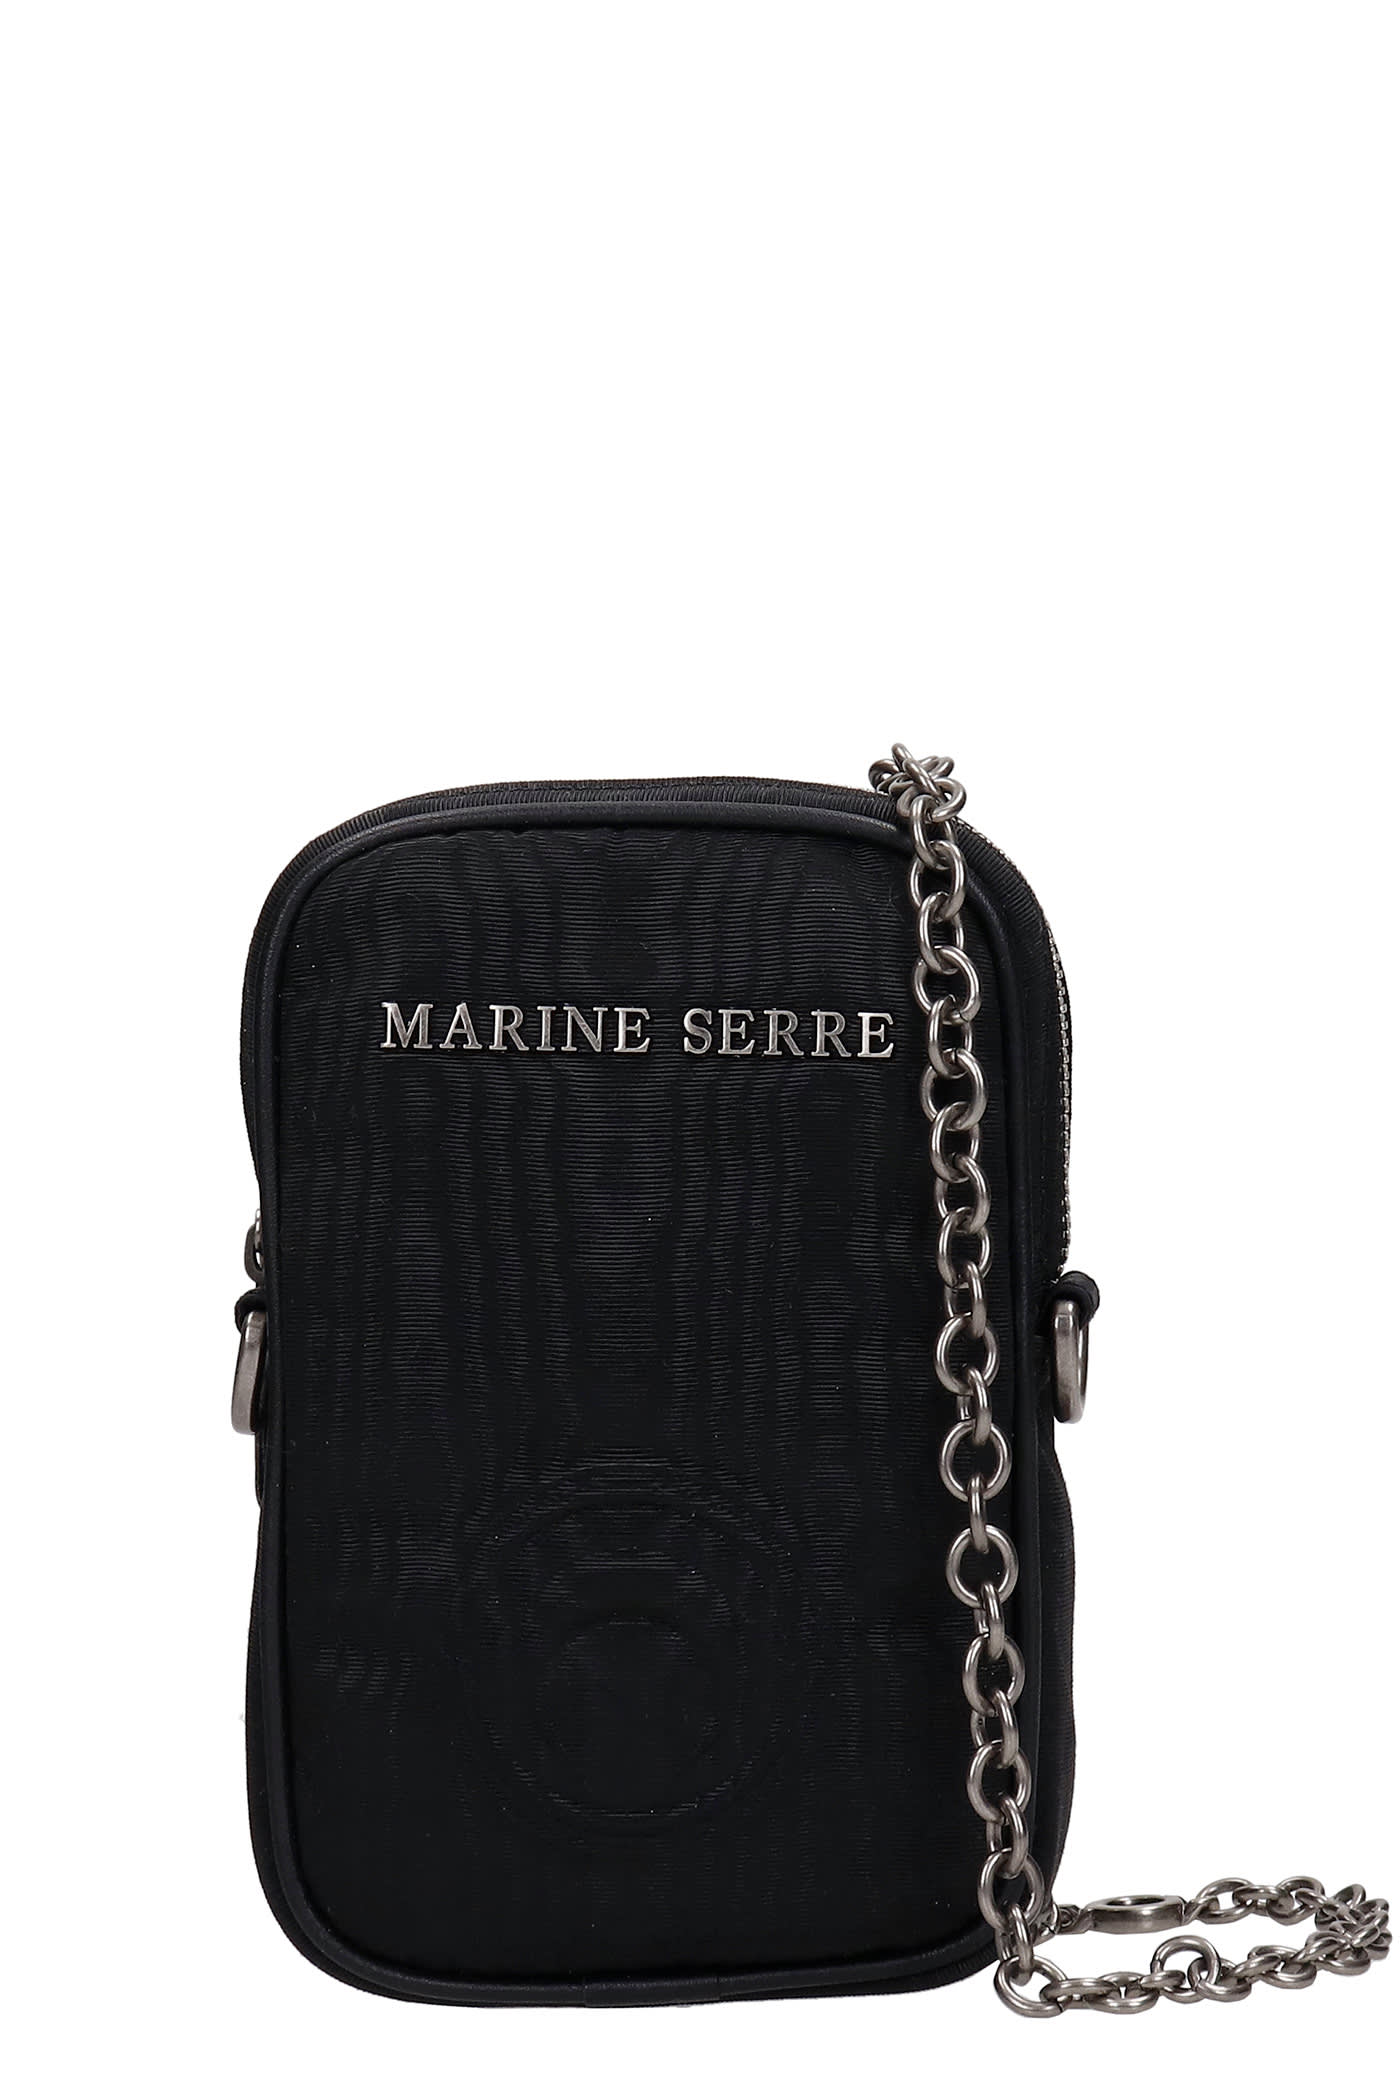 MARINE SERRE SHOULDER BAG IN BLACK VISCOSE,B009ICONX00